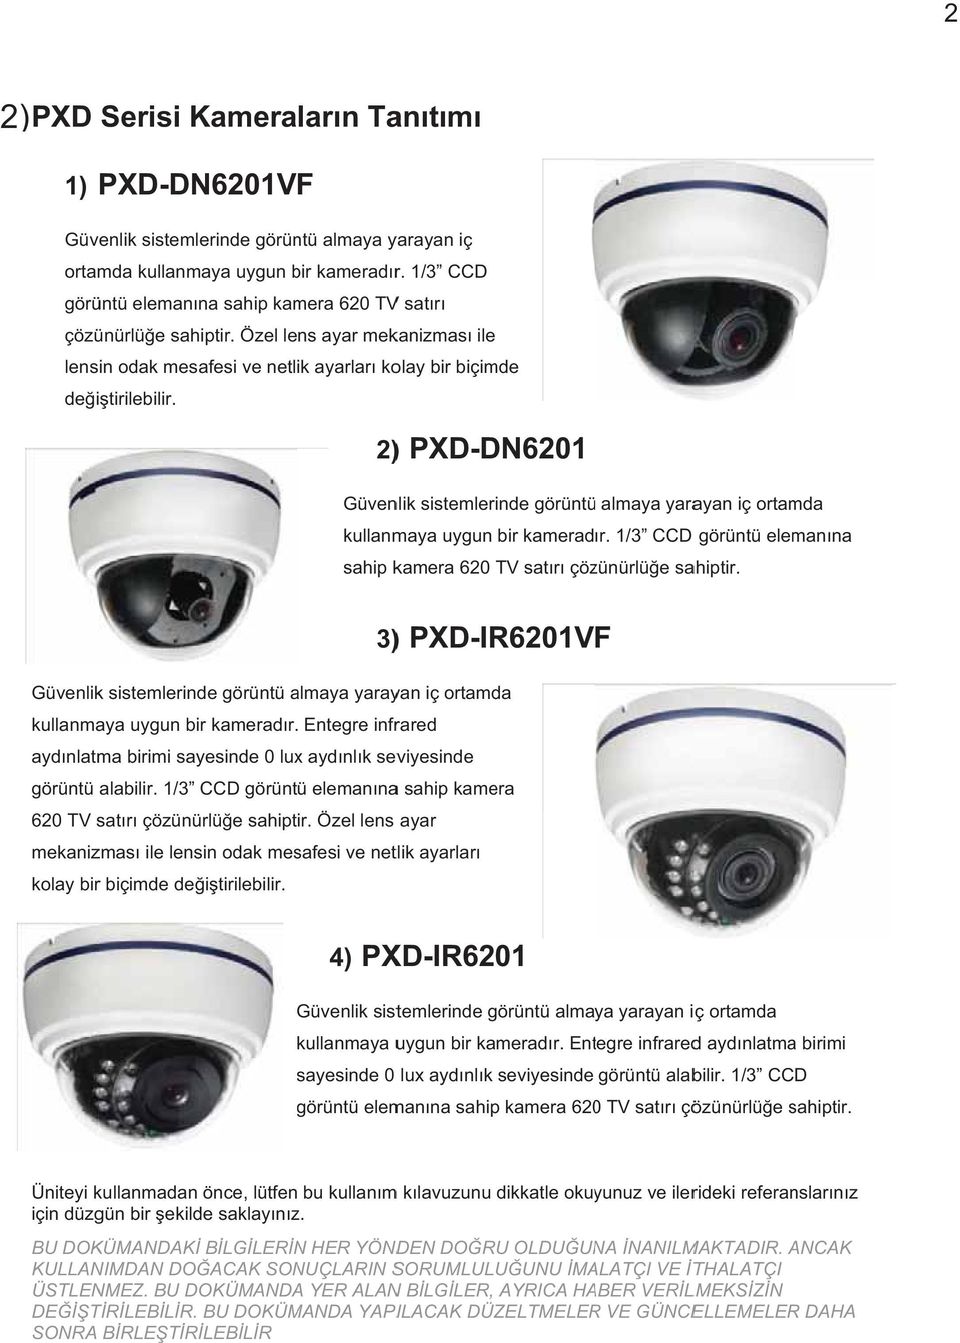 ) PXD-DN6201 2) Güvenlik sistemlerinde görüntü almaya yarayan iç ortamda kullanmaya uygun bir kameradr. 1/3 CCD görüntü elemanna sahip kamera 620 TV satr çözünürlüe sahiptir.